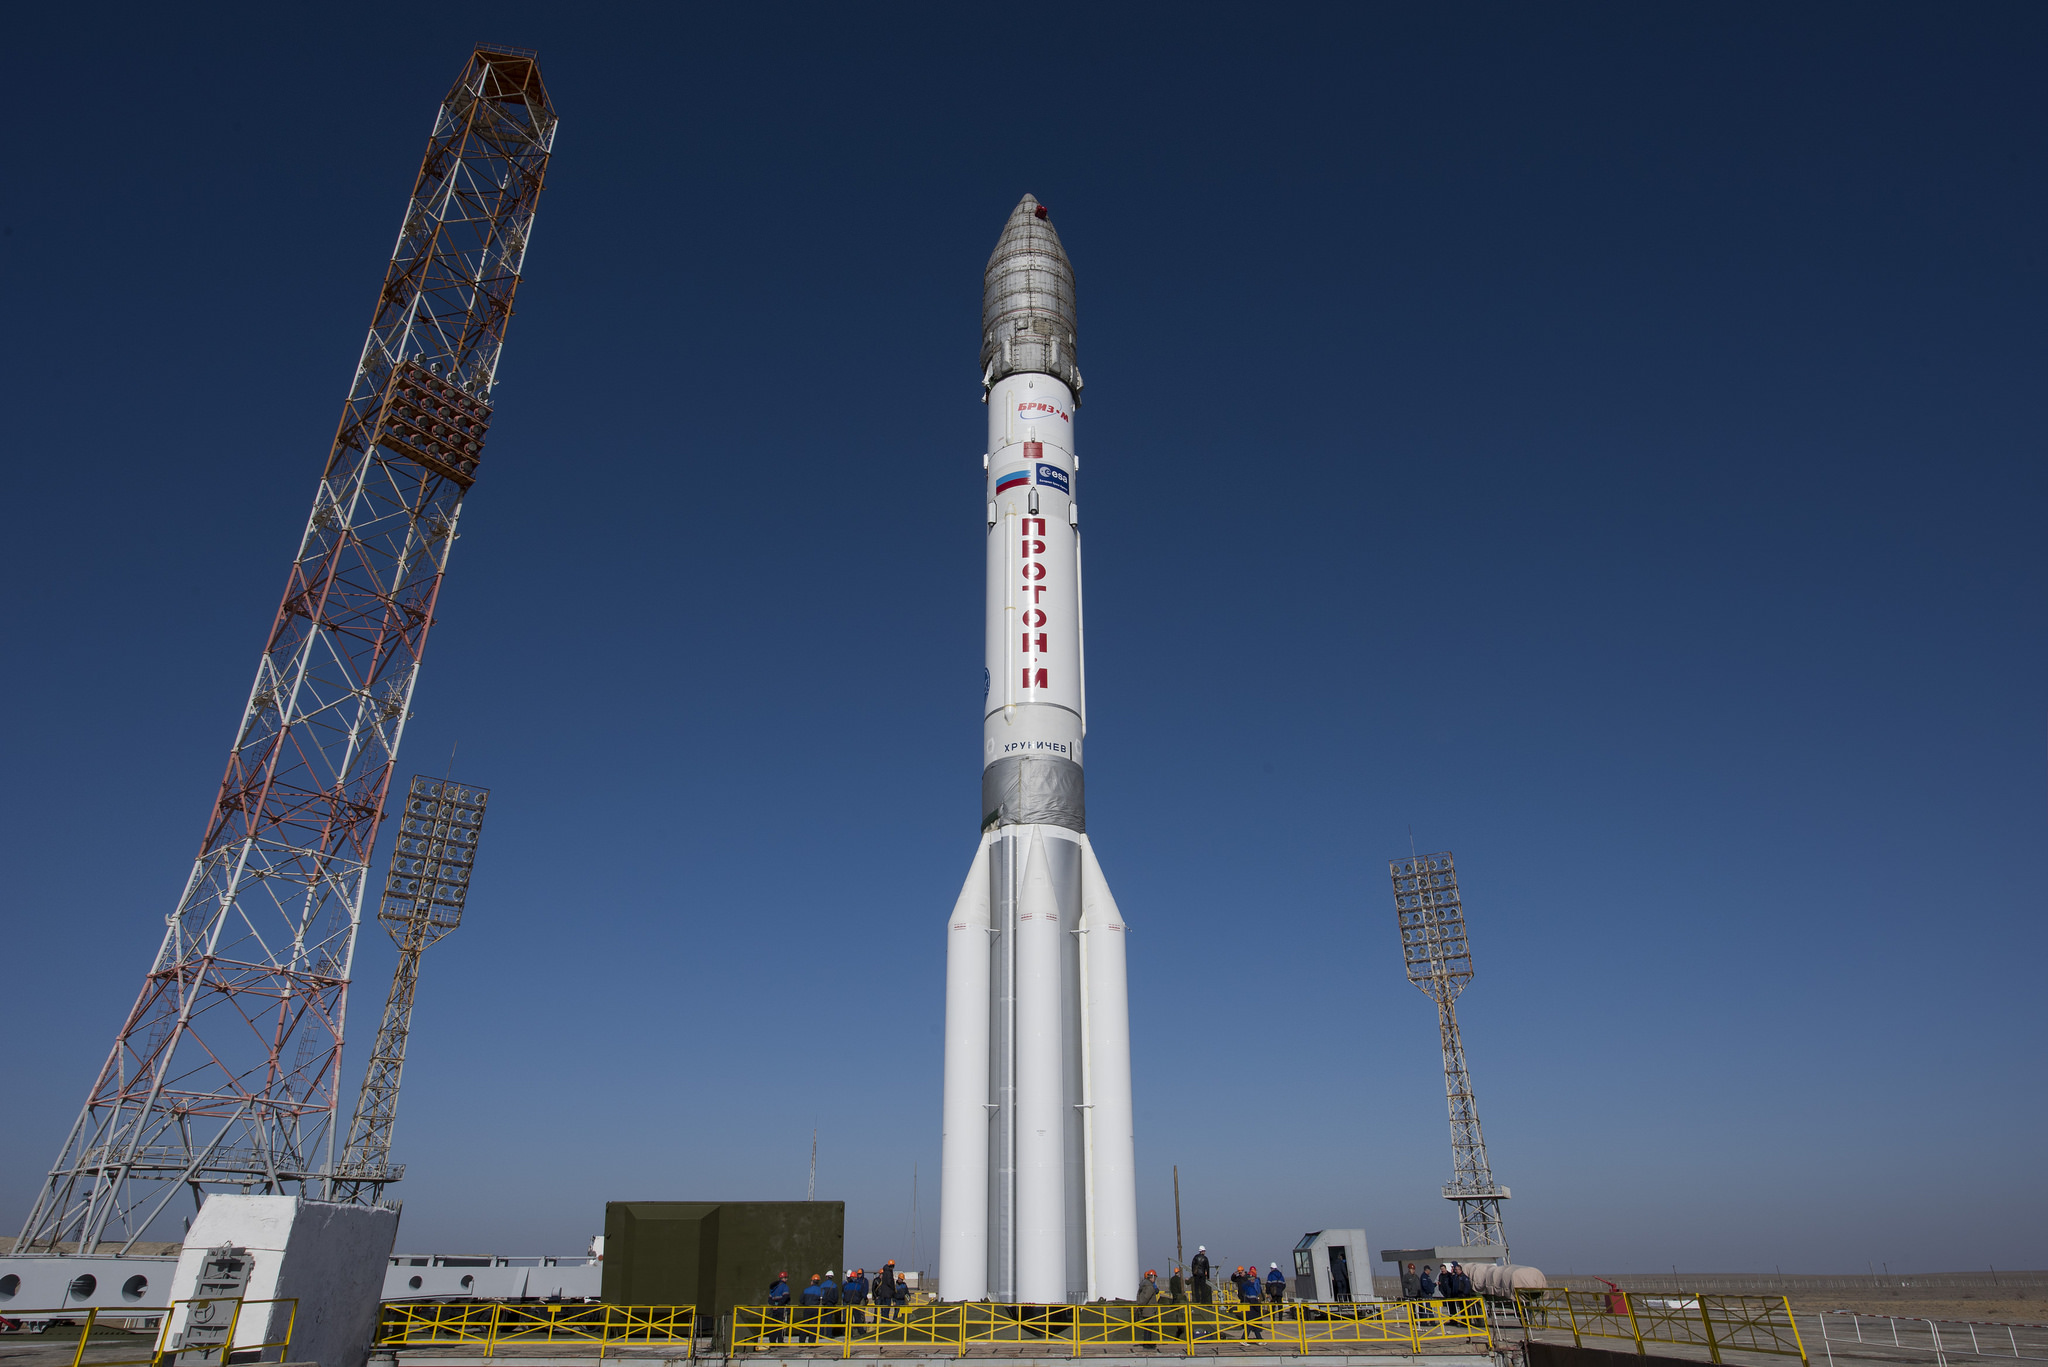 La fusée Proton qui va lancer le vaisseau Exomars2016 vers Mars a été mis en position verticale sur le pas de tir à Baïkonour, Kazakhstan. (Crédit : ESA-Stephane Corvaja)